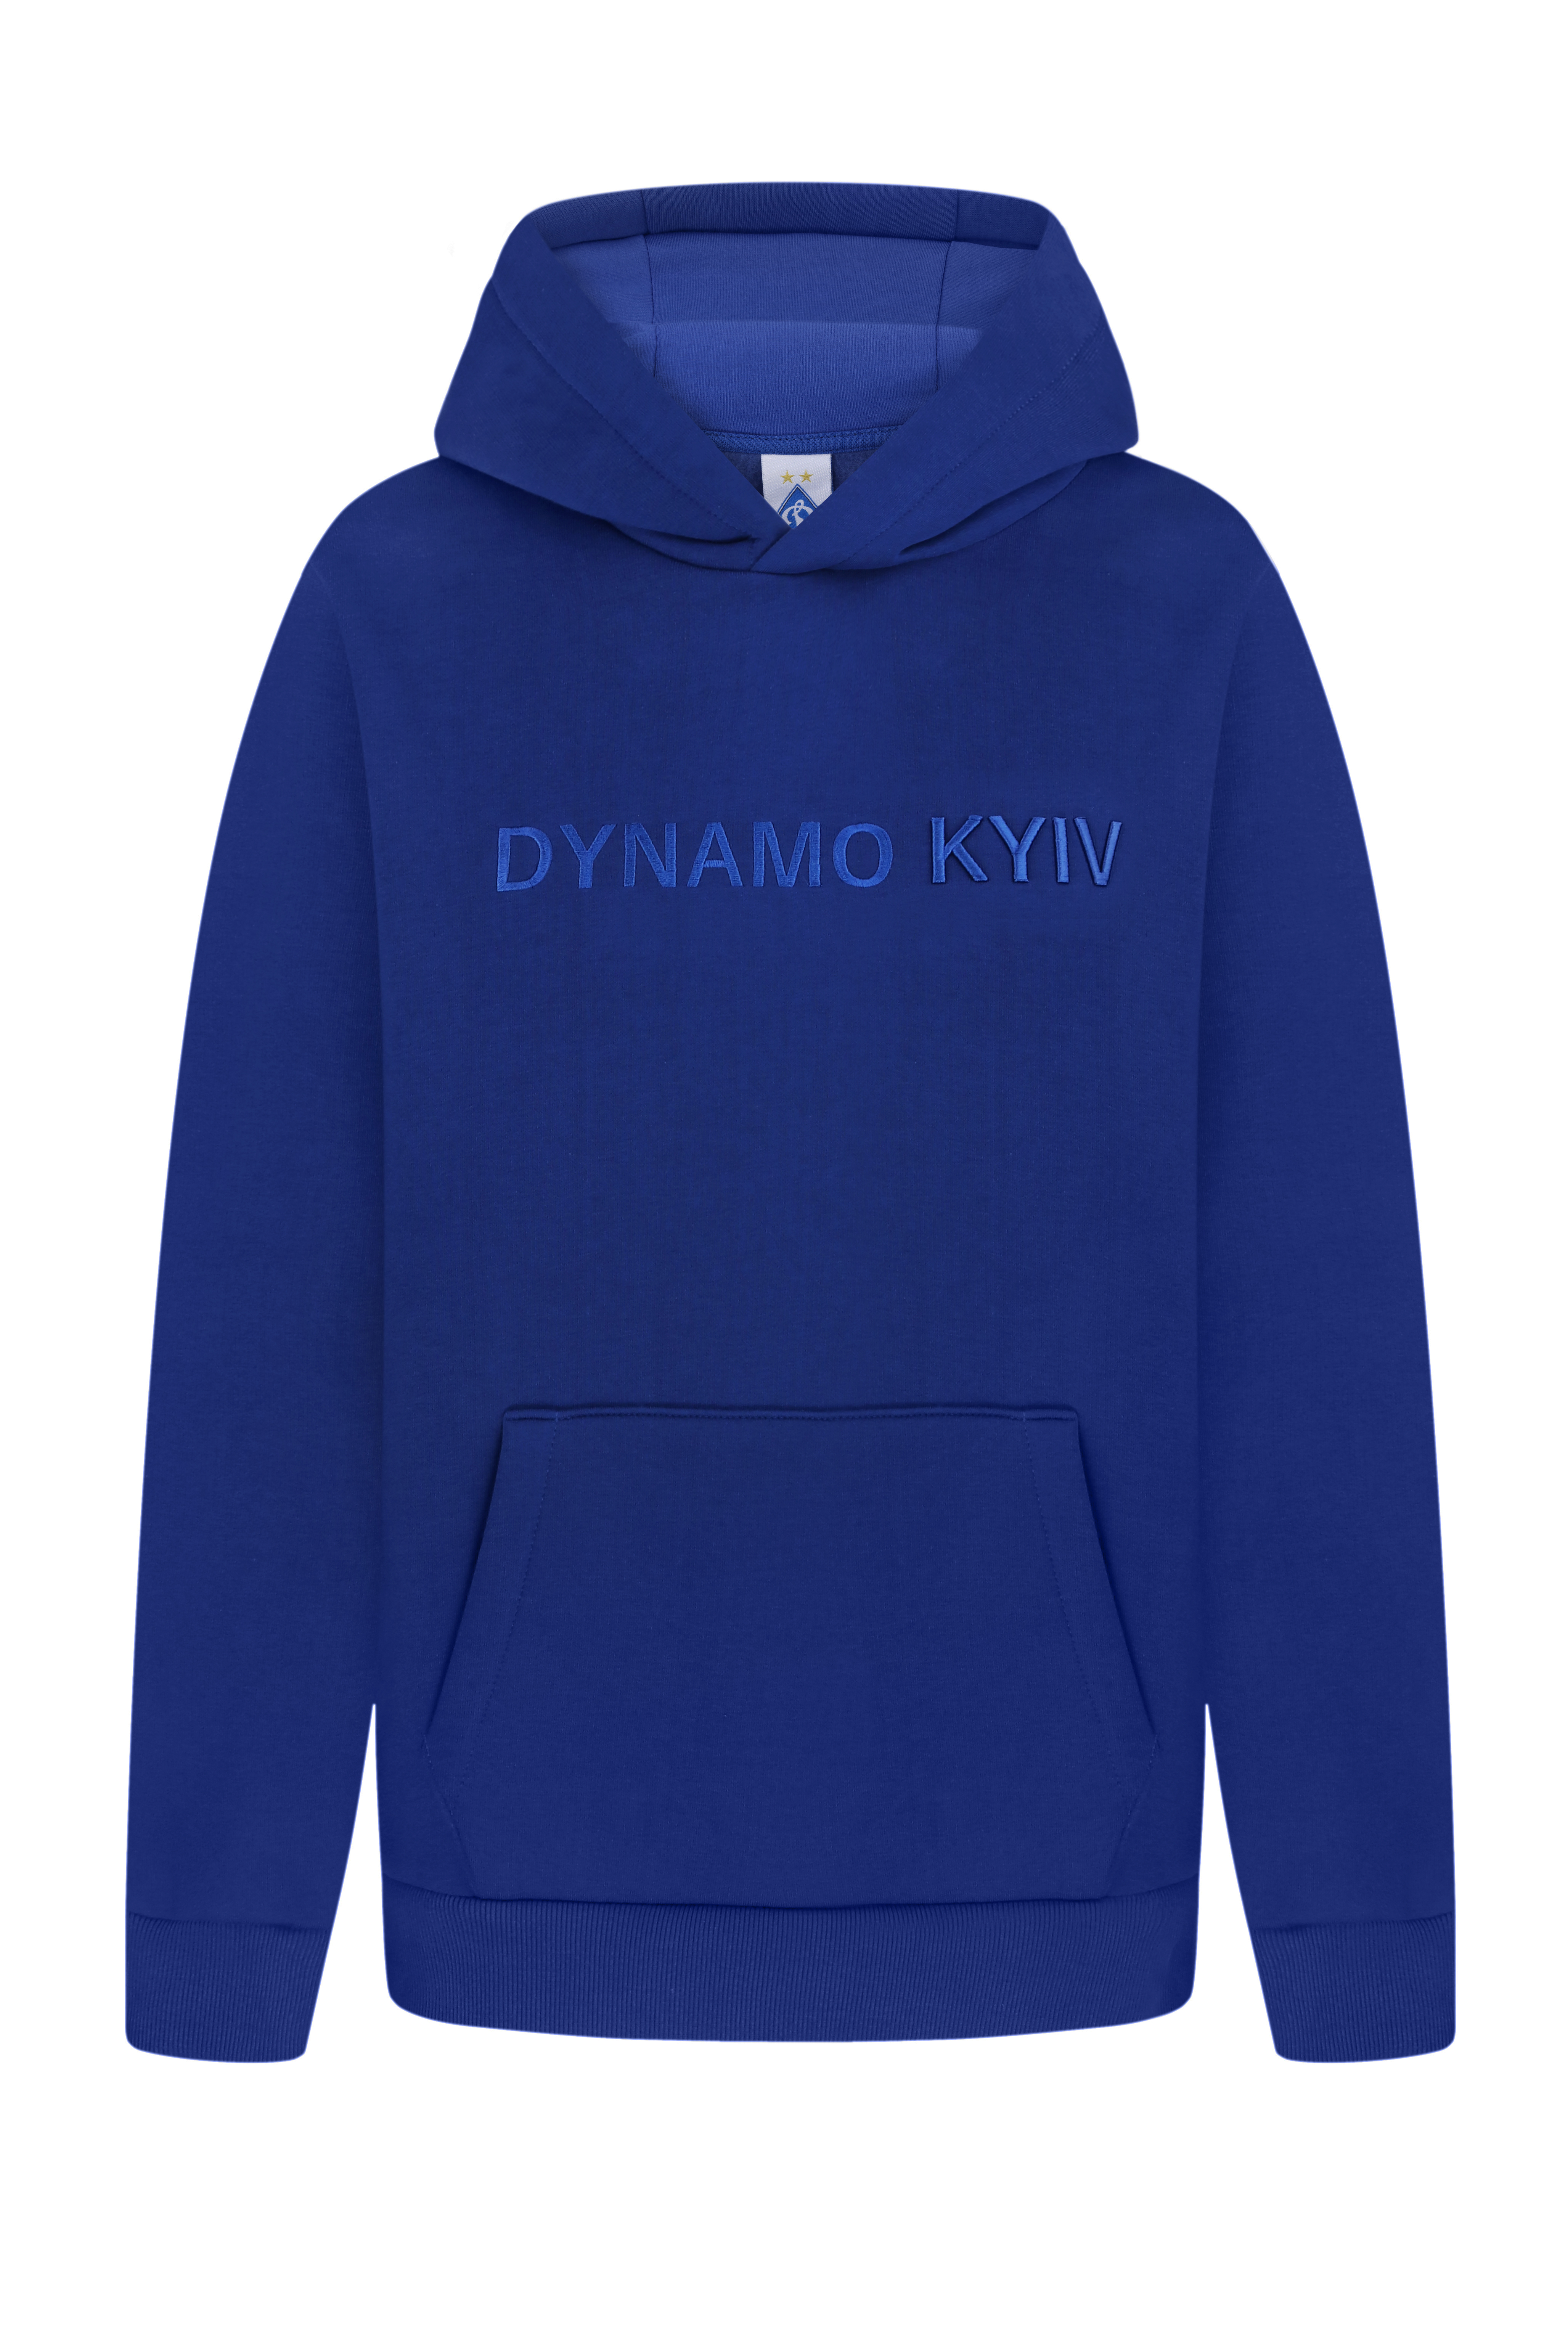 Теплый худи "Dynamo Kyiv", синий